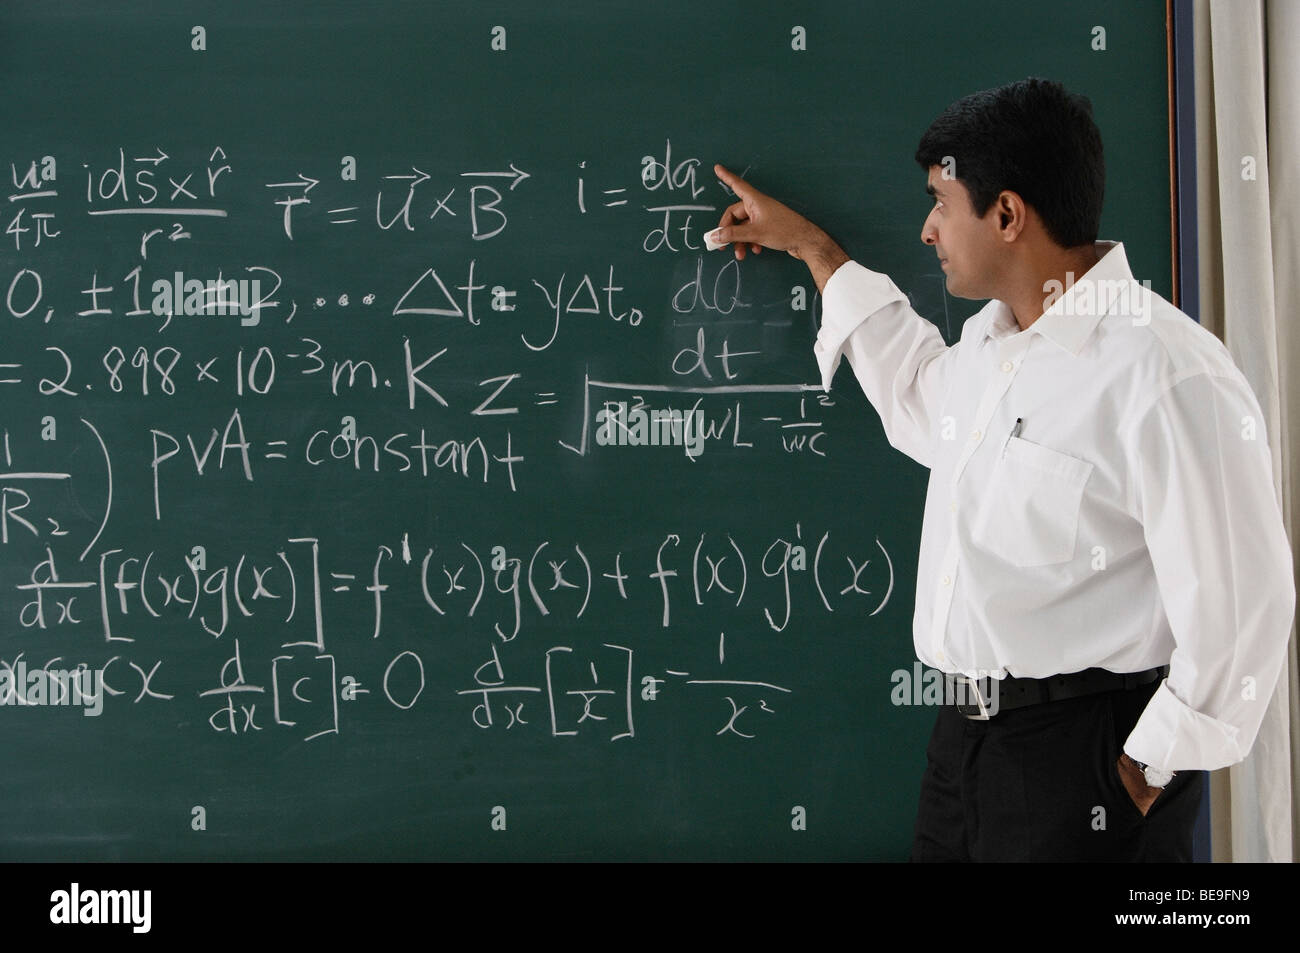 Самая тяжелая математика. Задачи тысячелетия по математике. Фото индийских математиков. Семь нерешенных математических задач тысячелетия. Задачи тысячелетия фото.